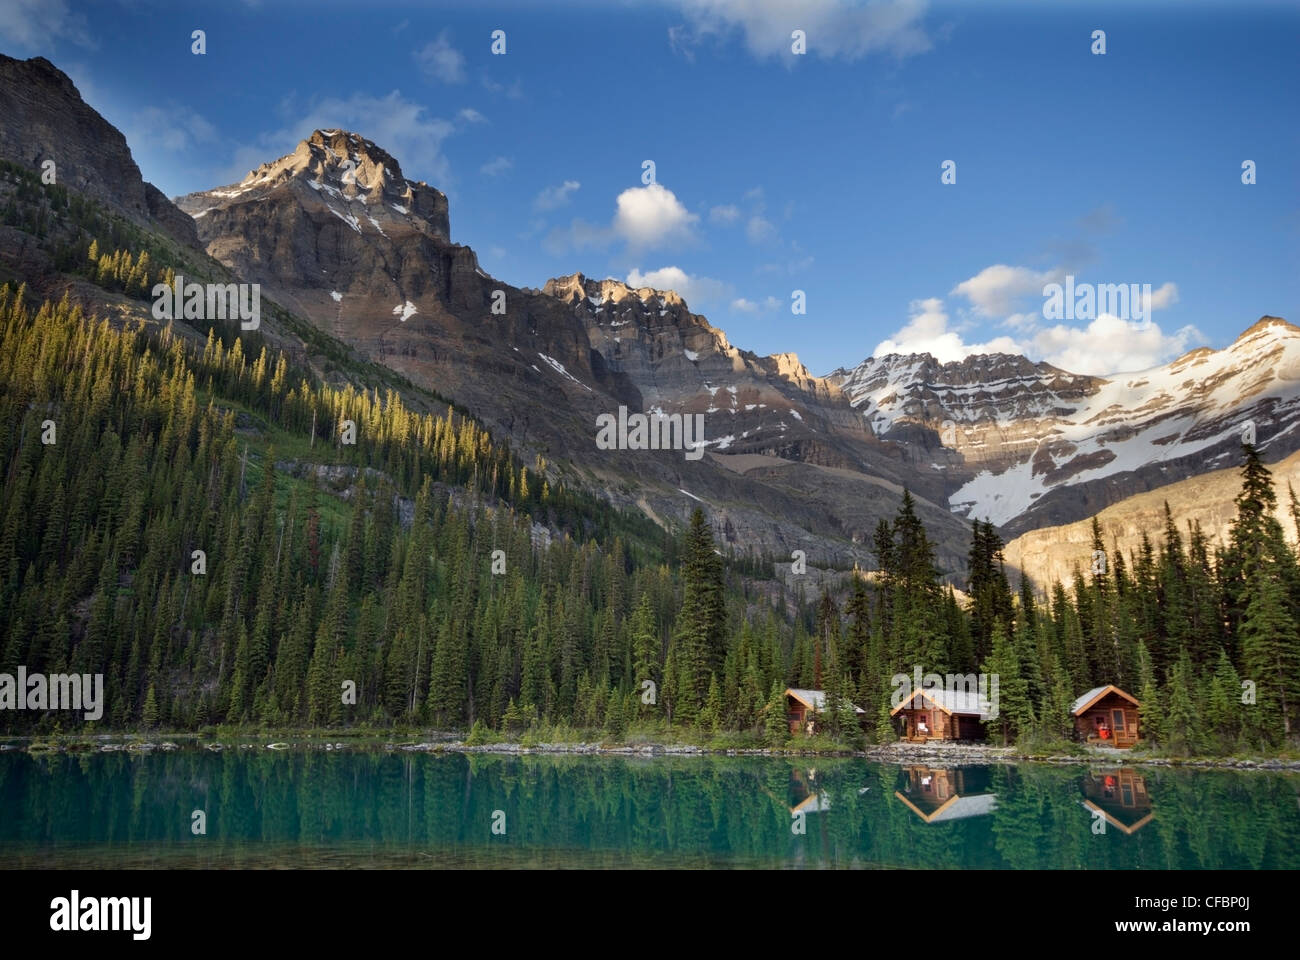 Cabins, Mount Lefroy, Glacier Peak, Lake O'Hara, Yoho National Park, British Columbia, Canada Stock Photo